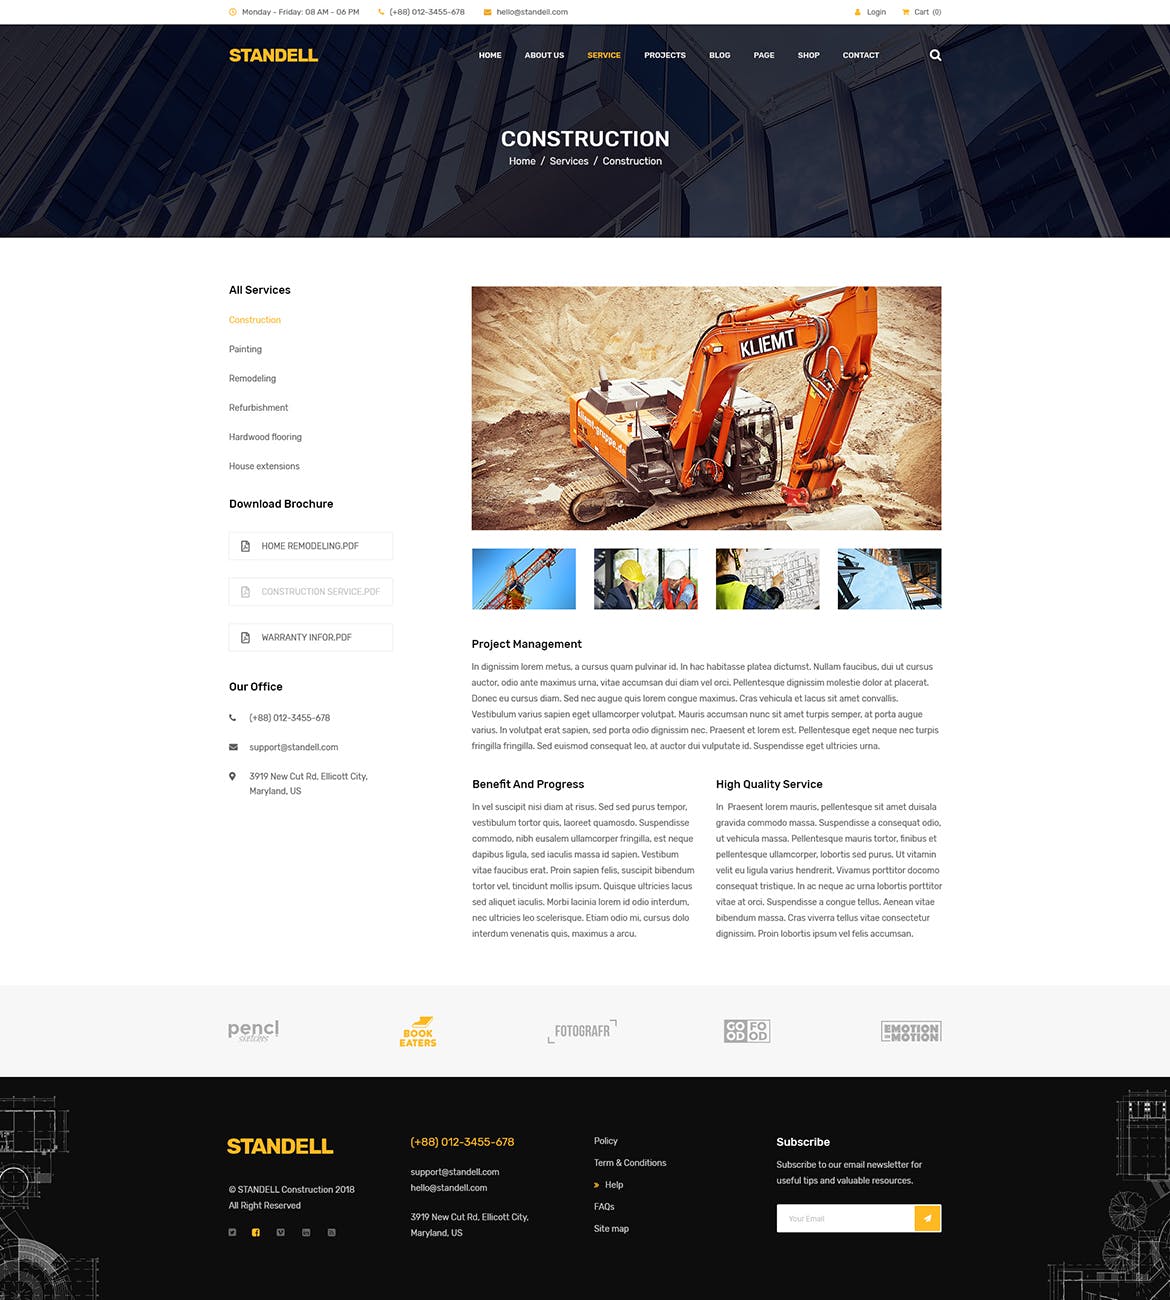 建筑基建工程公司网站设计PSD模板 Standell | Multipurpose Construction PSD Template插图(6)